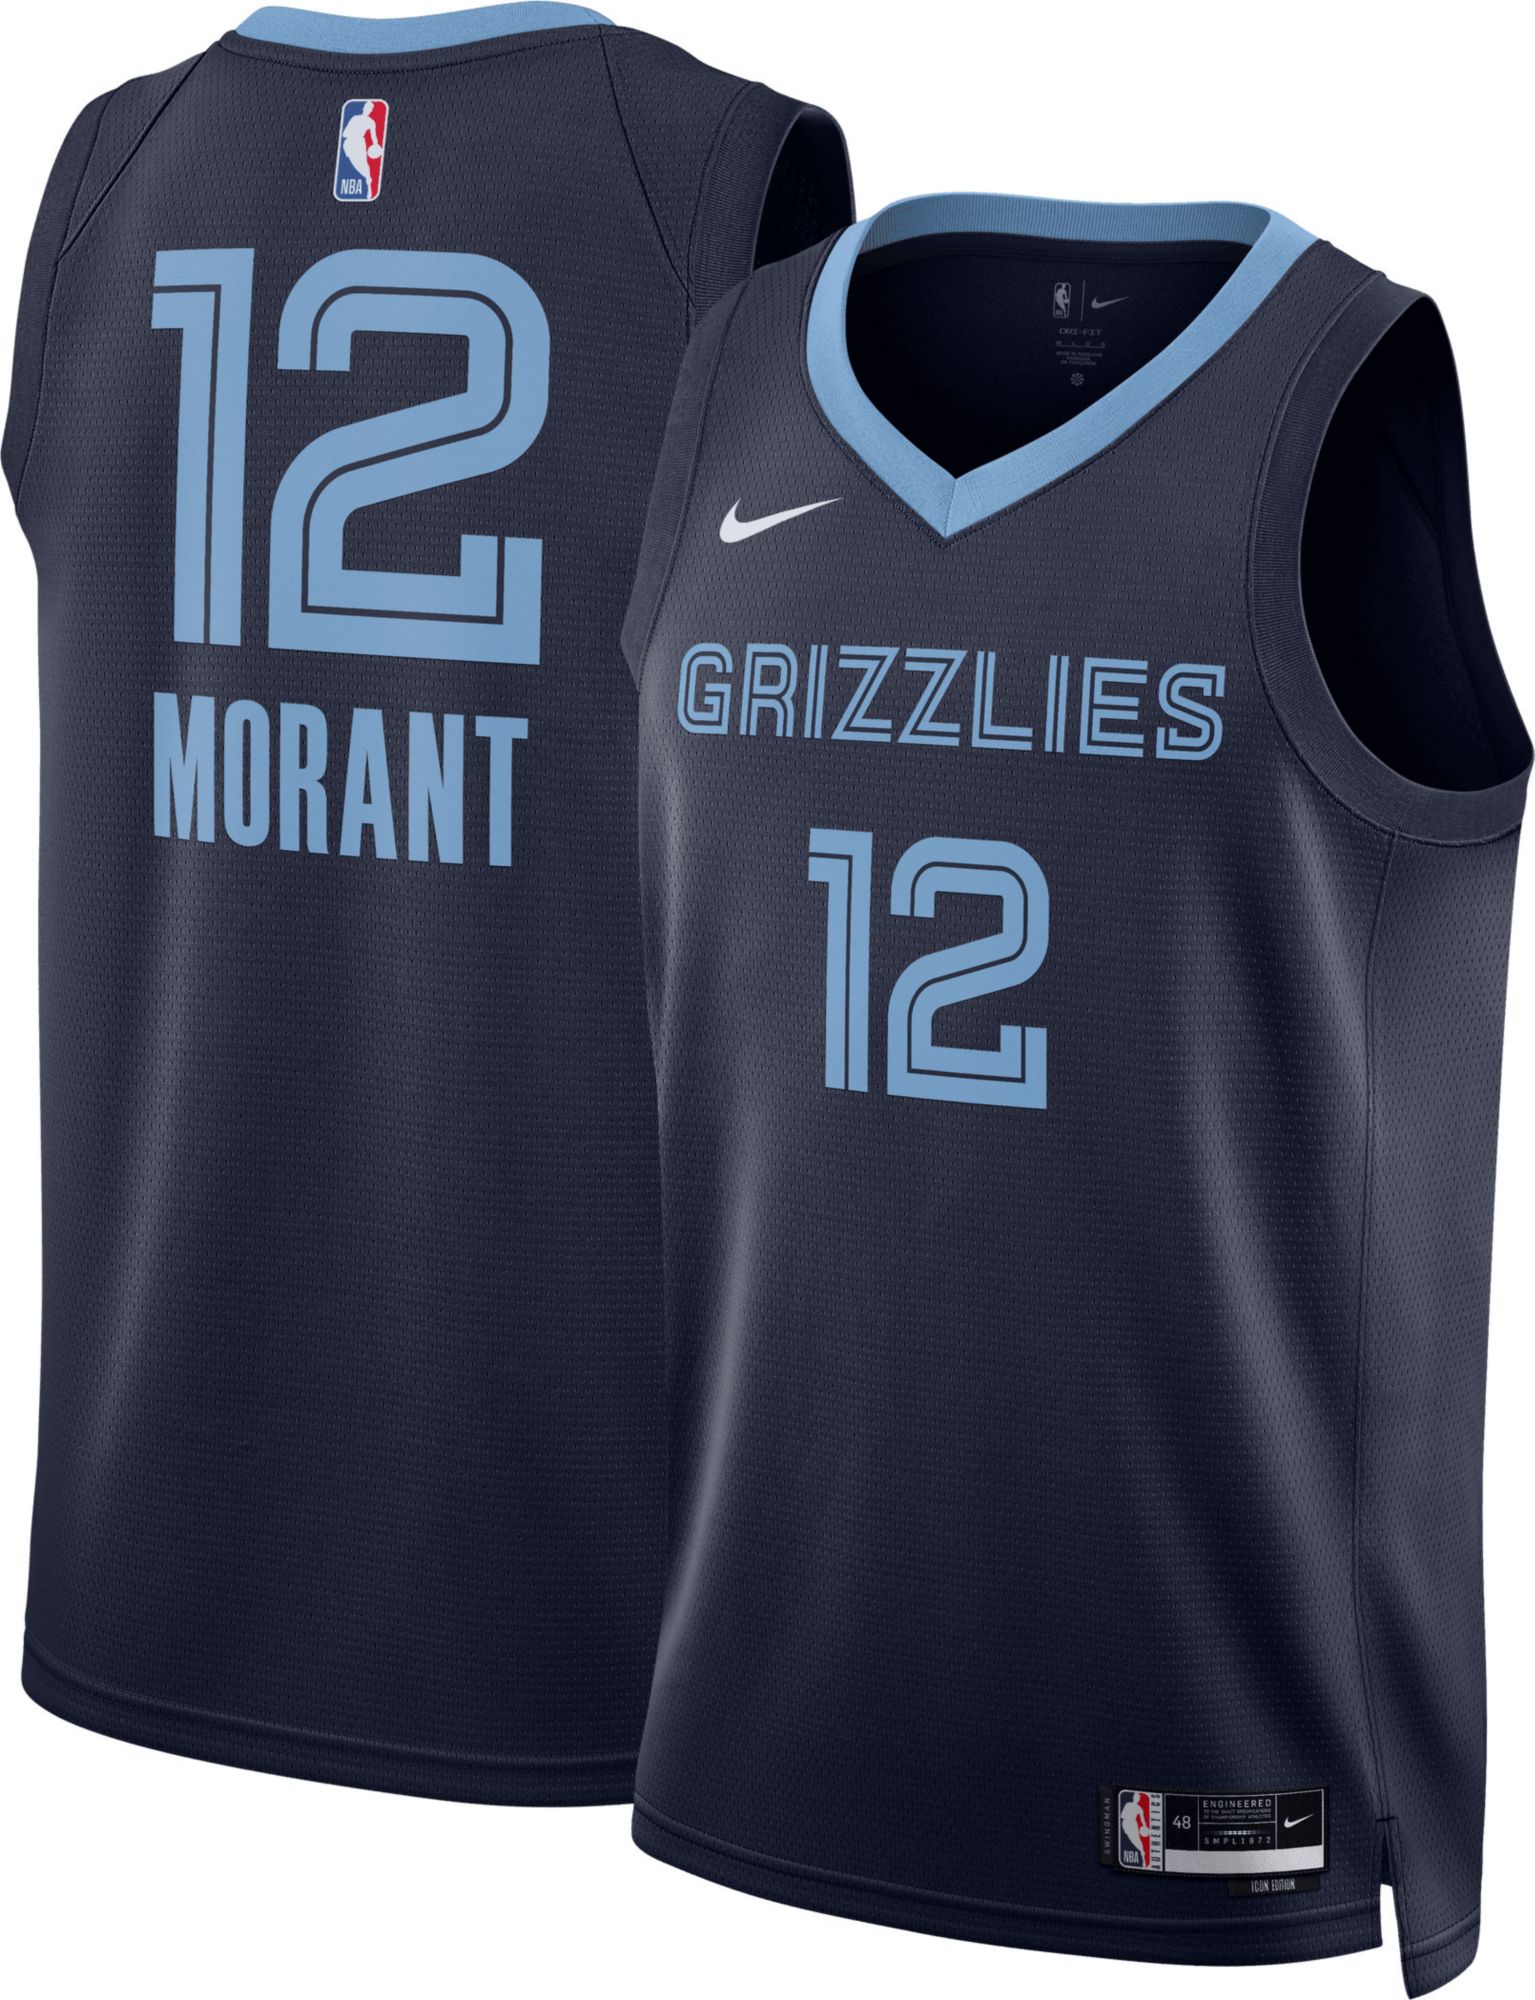  NBA Memphis Grizzlies Mike Bibby Swingman Jersey Turquoise,  XX-Large : Sports Fan Basketball Jerseys : Sports & Outdoors